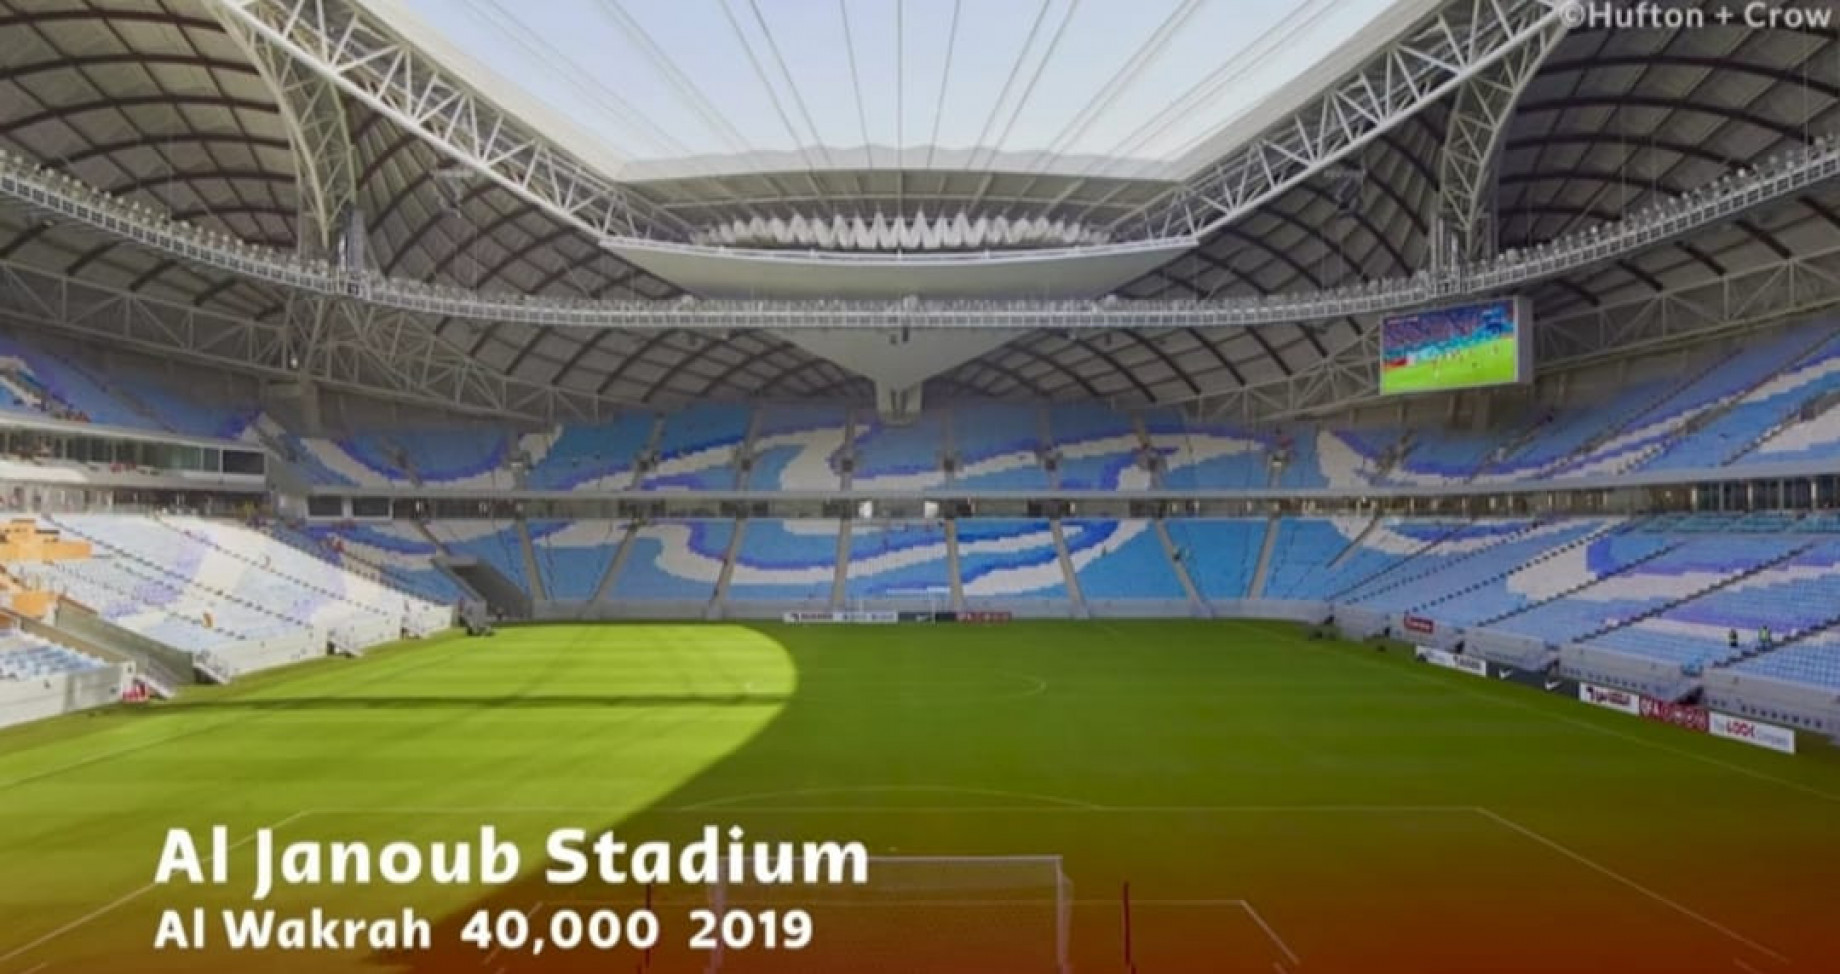 stadio-qatar-2022-scrren-due.jpeg